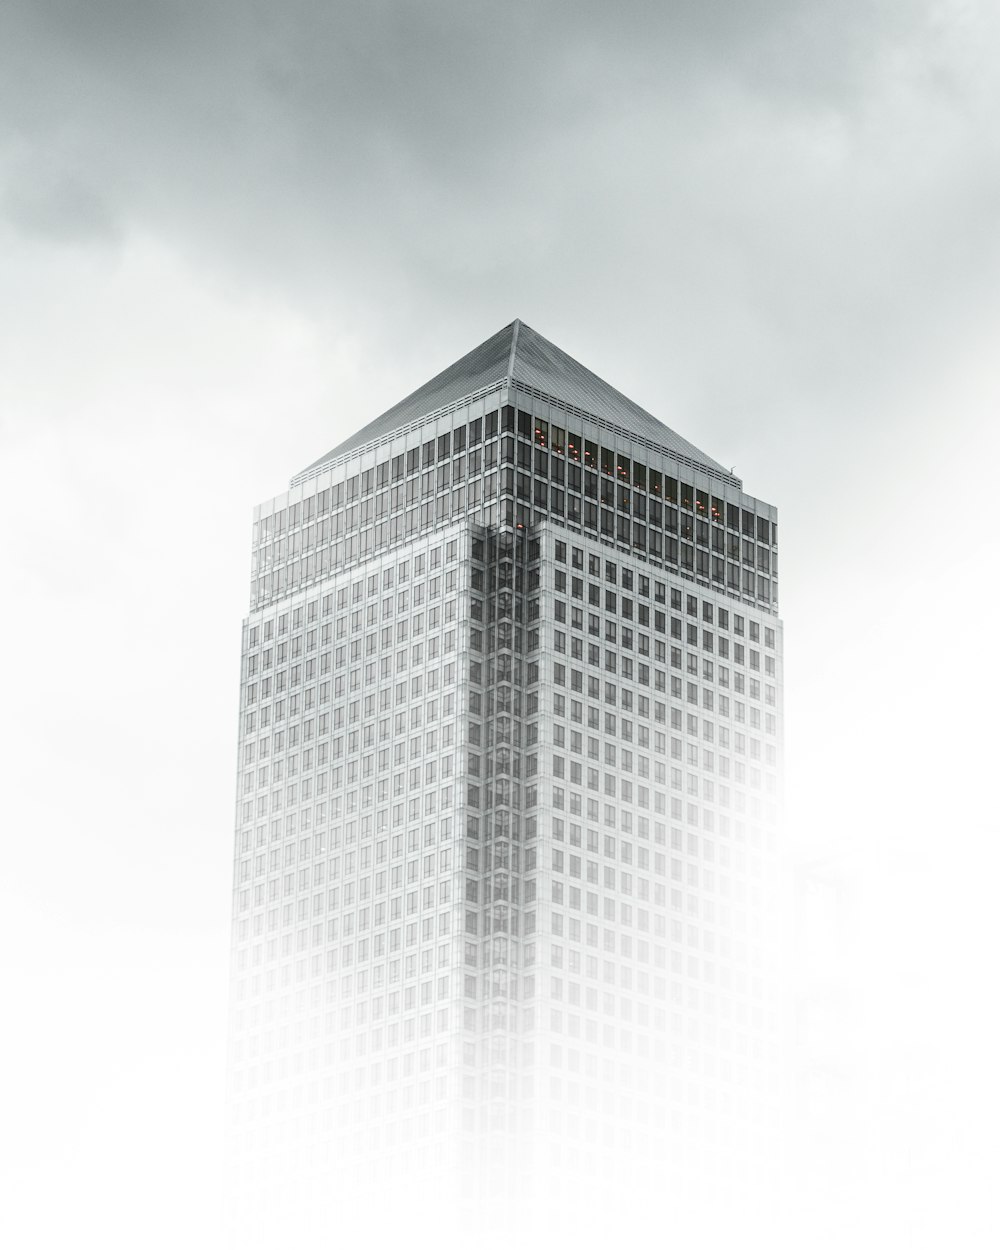 Fotografia di vista a occhio di verme dell'edificio in cemento bianco e grigio sotto il cielo nuvoloso